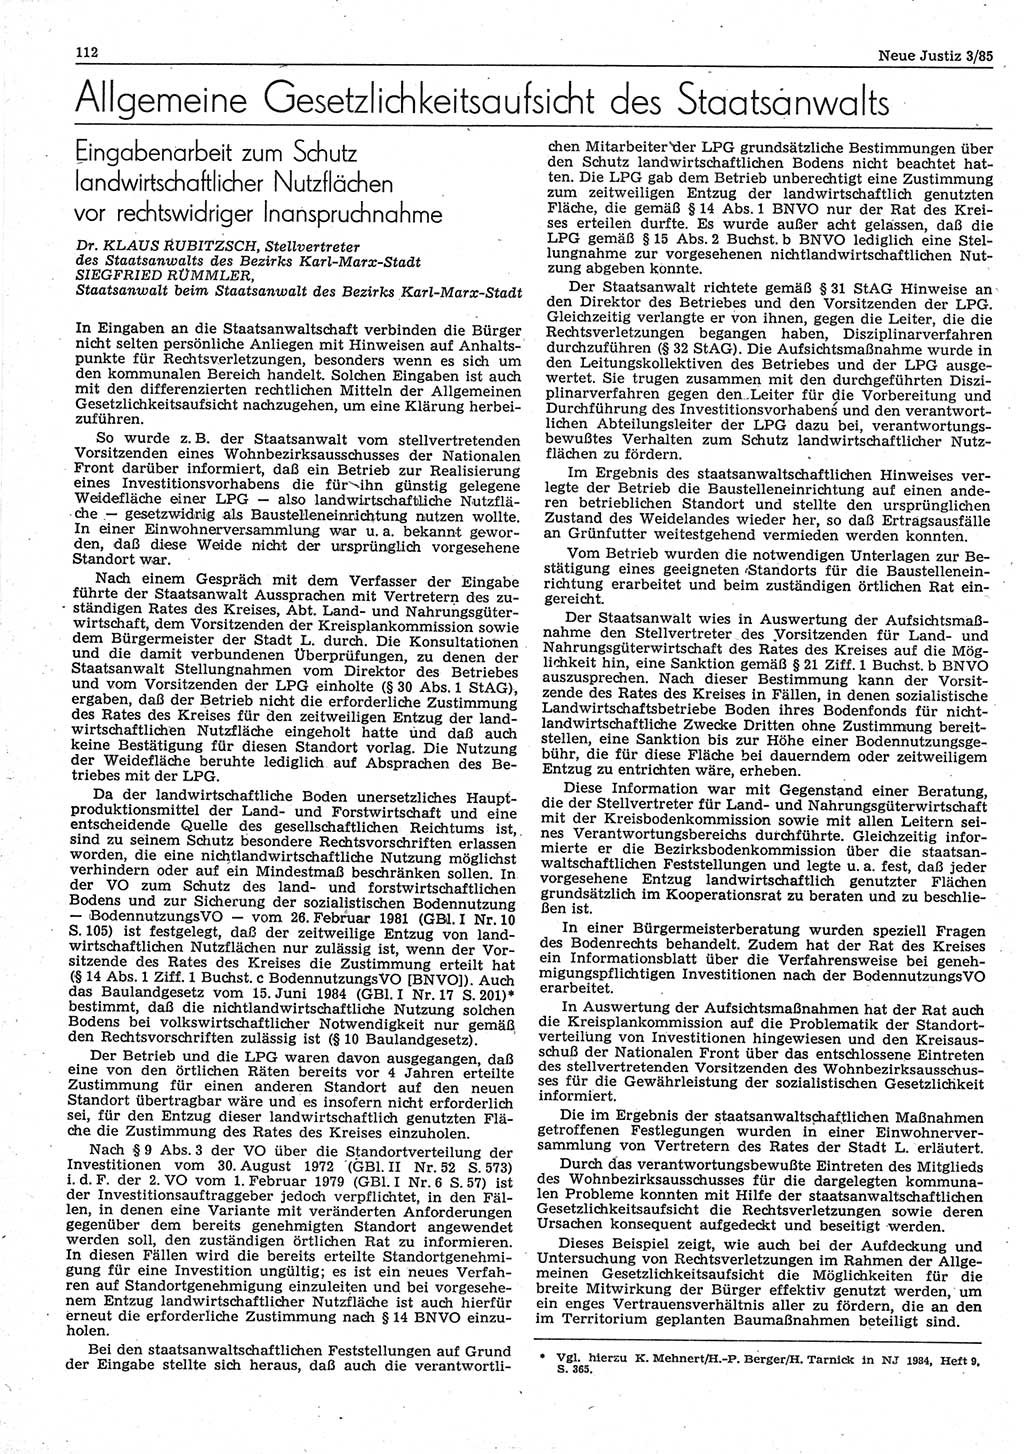 Neue Justiz (NJ), Zeitschrift für sozialistisches Recht und Gesetzlichkeit [Deutsche Demokratische Republik (DDR)], 39. Jahrgang 1985, Seite 112 (NJ DDR 1985, S. 112)